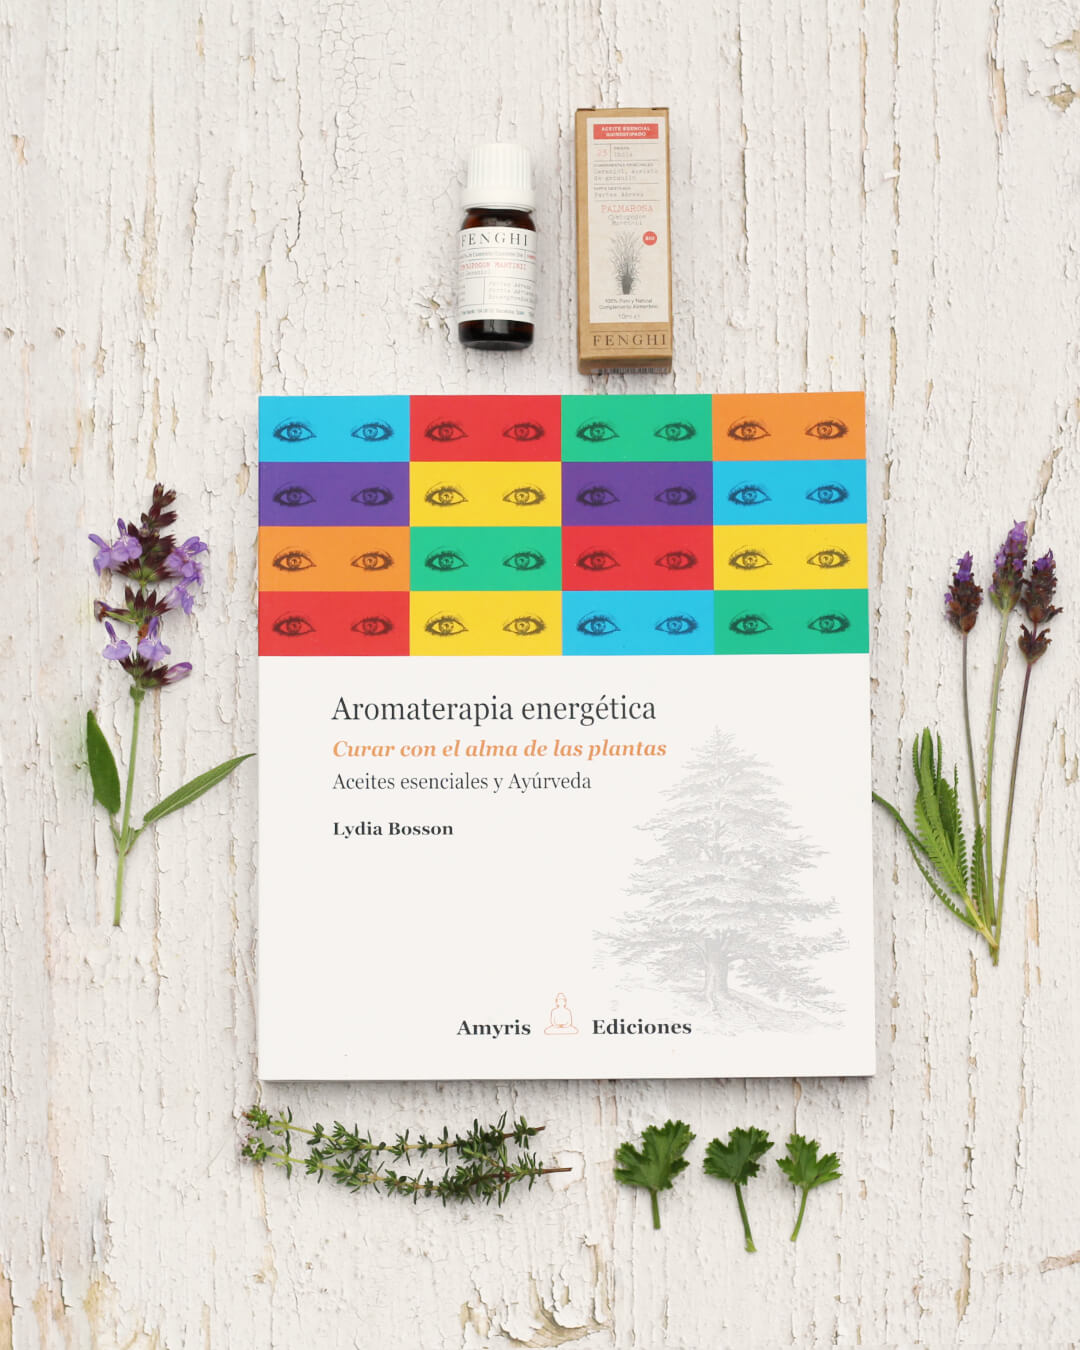 Libro de Lydia Bosson cuyo título es &quot;Aromaterapia Energeética. Curar con el alma de las Plantas&quot;. Colocado sobre un fondo blanco muy natural, el libro esta rodeado por plantas  mediterráneas.